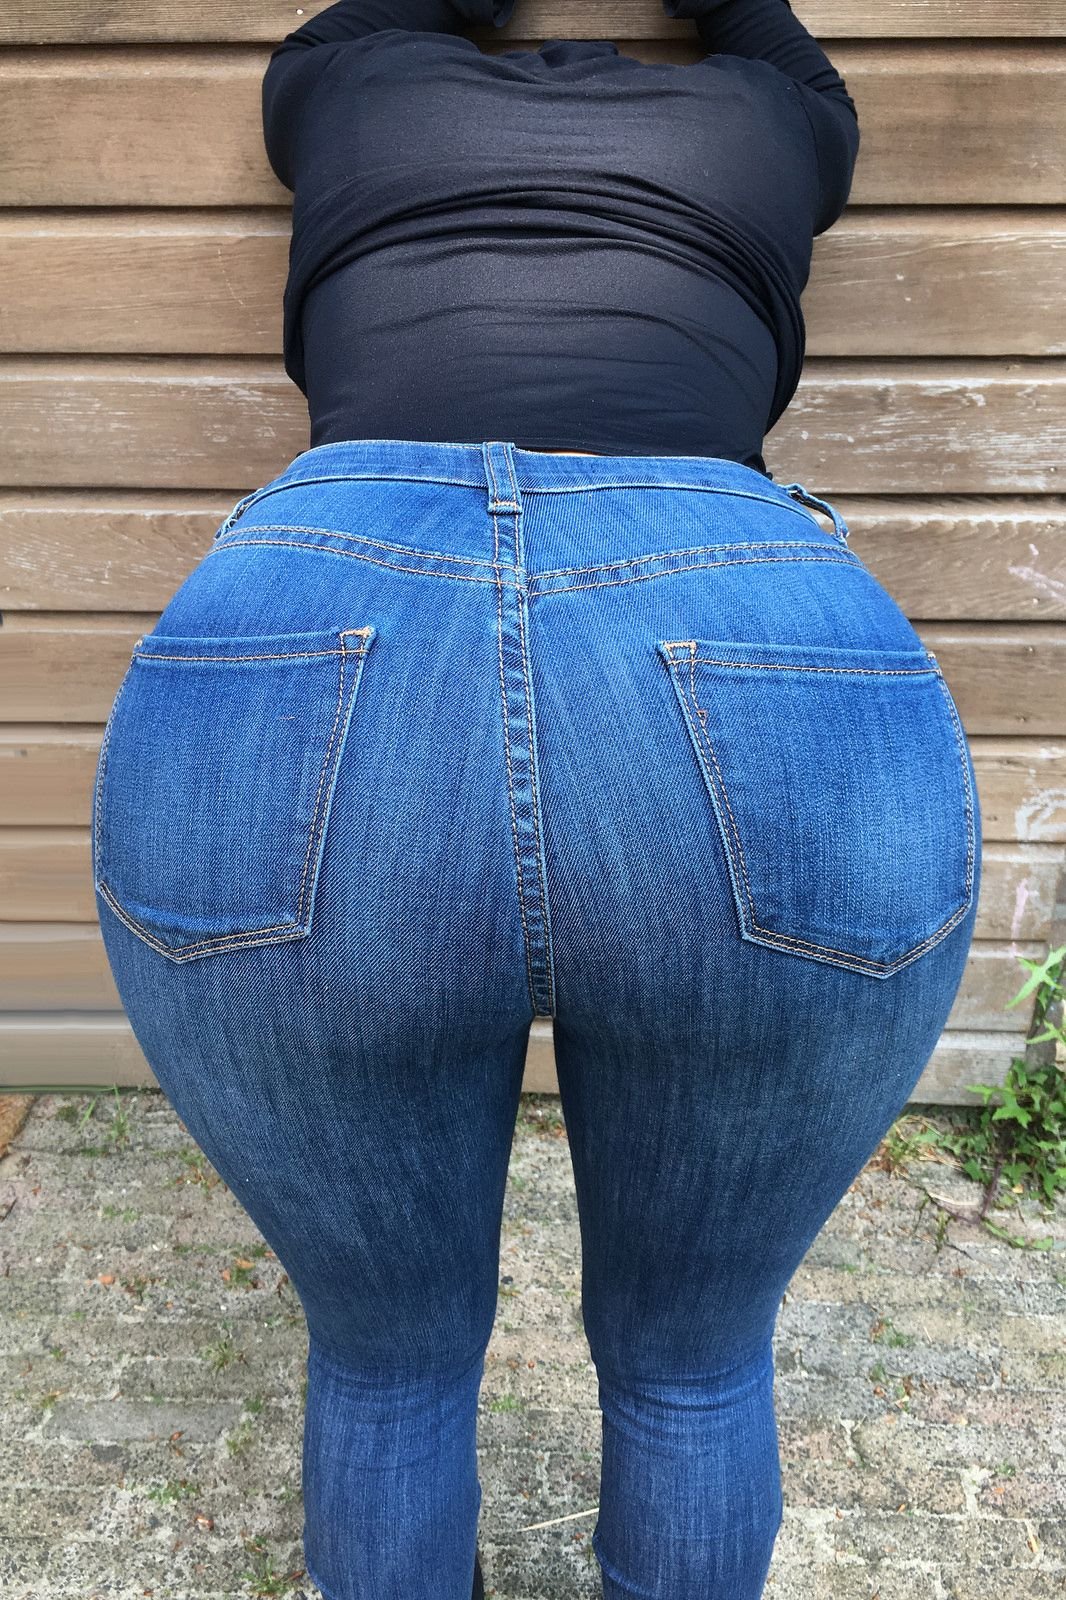 Big Fat Butt Jeans